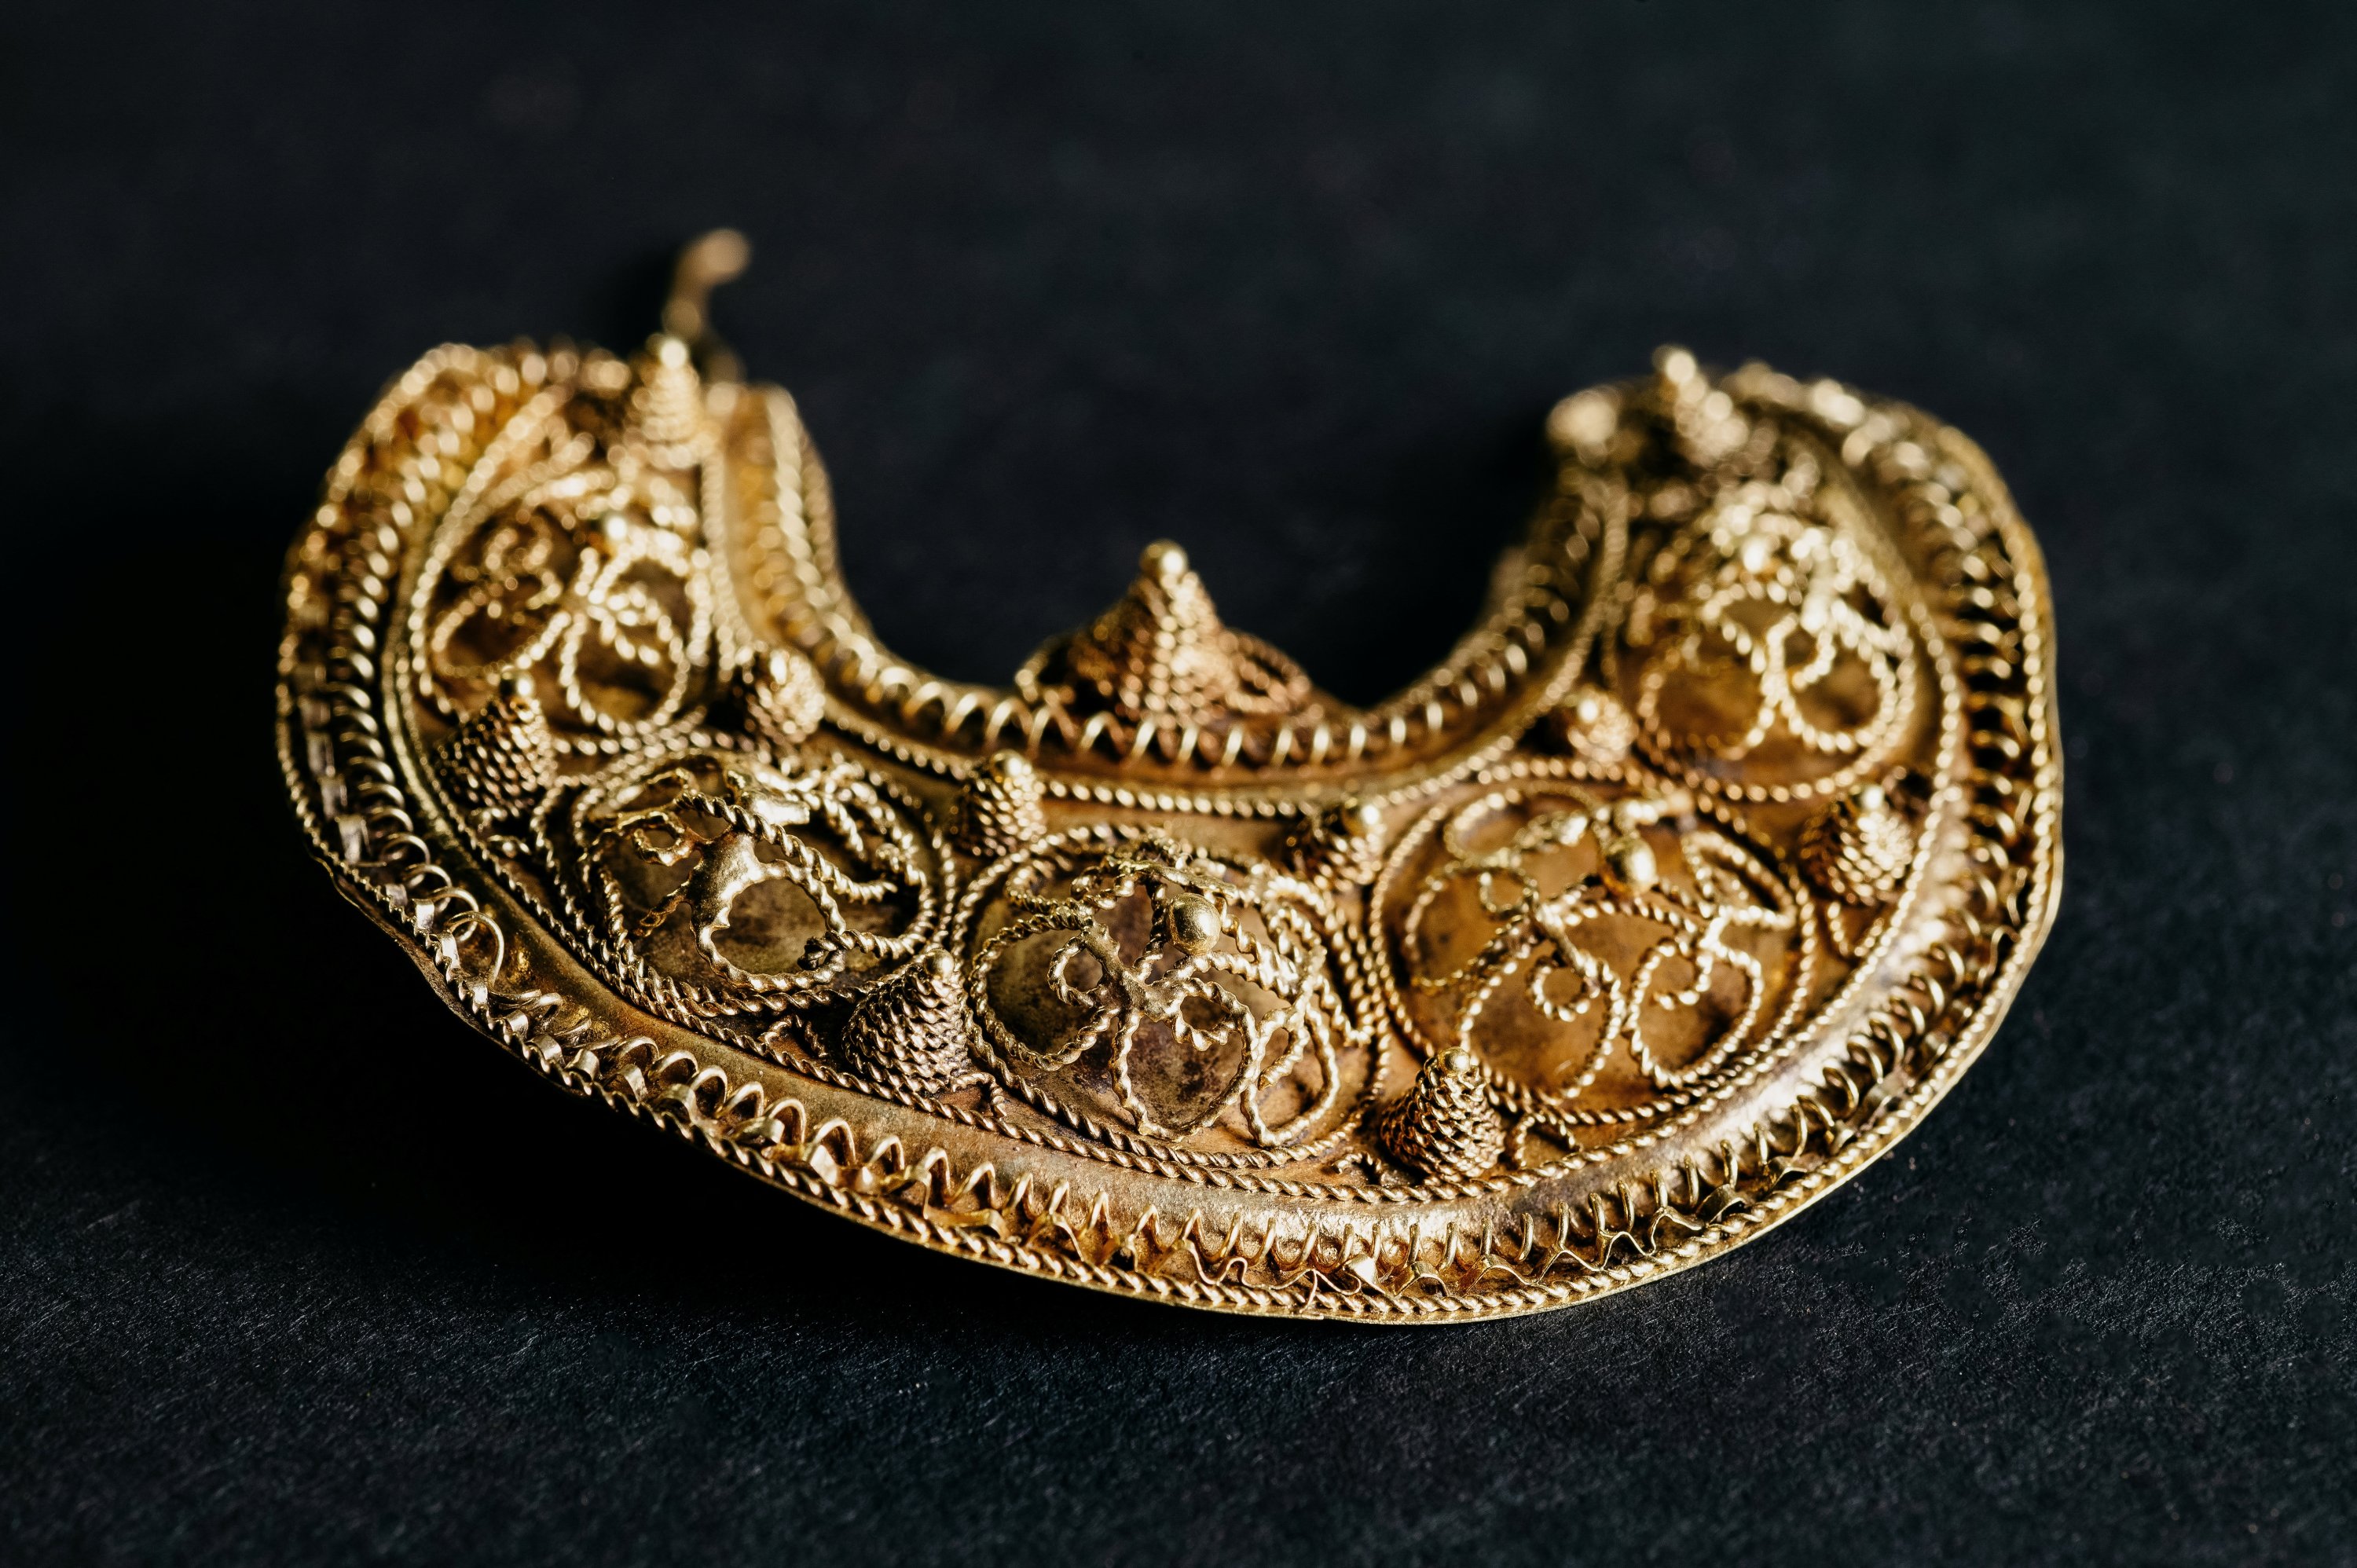 Hoogwoud, Hollanda'da bulunan 1000 yıllık ortaçağ hazinesinin bir kısmı, mücevher ve gümüş sikkelerden oluşan bu tarihsiz fotoğrafta gösterilmektedir.  (Reuters Fotoğrafı)